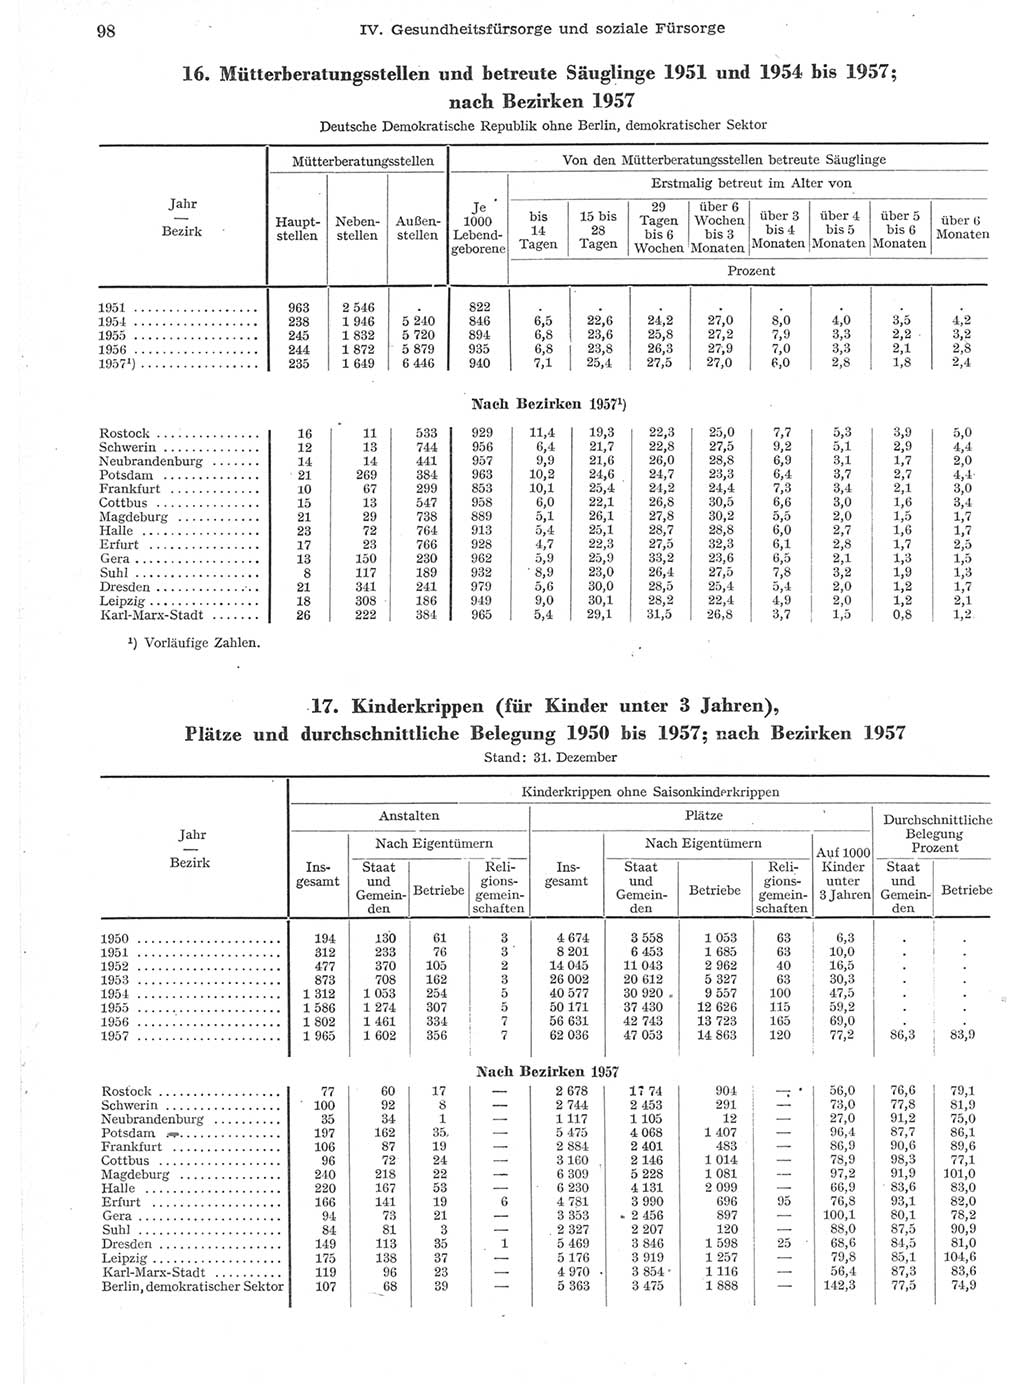 Statistisches Jahrbuch der Deutschen Demokratischen Republik (DDR) 1957, Seite 98 (Stat. Jb. DDR 1957, S. 98)